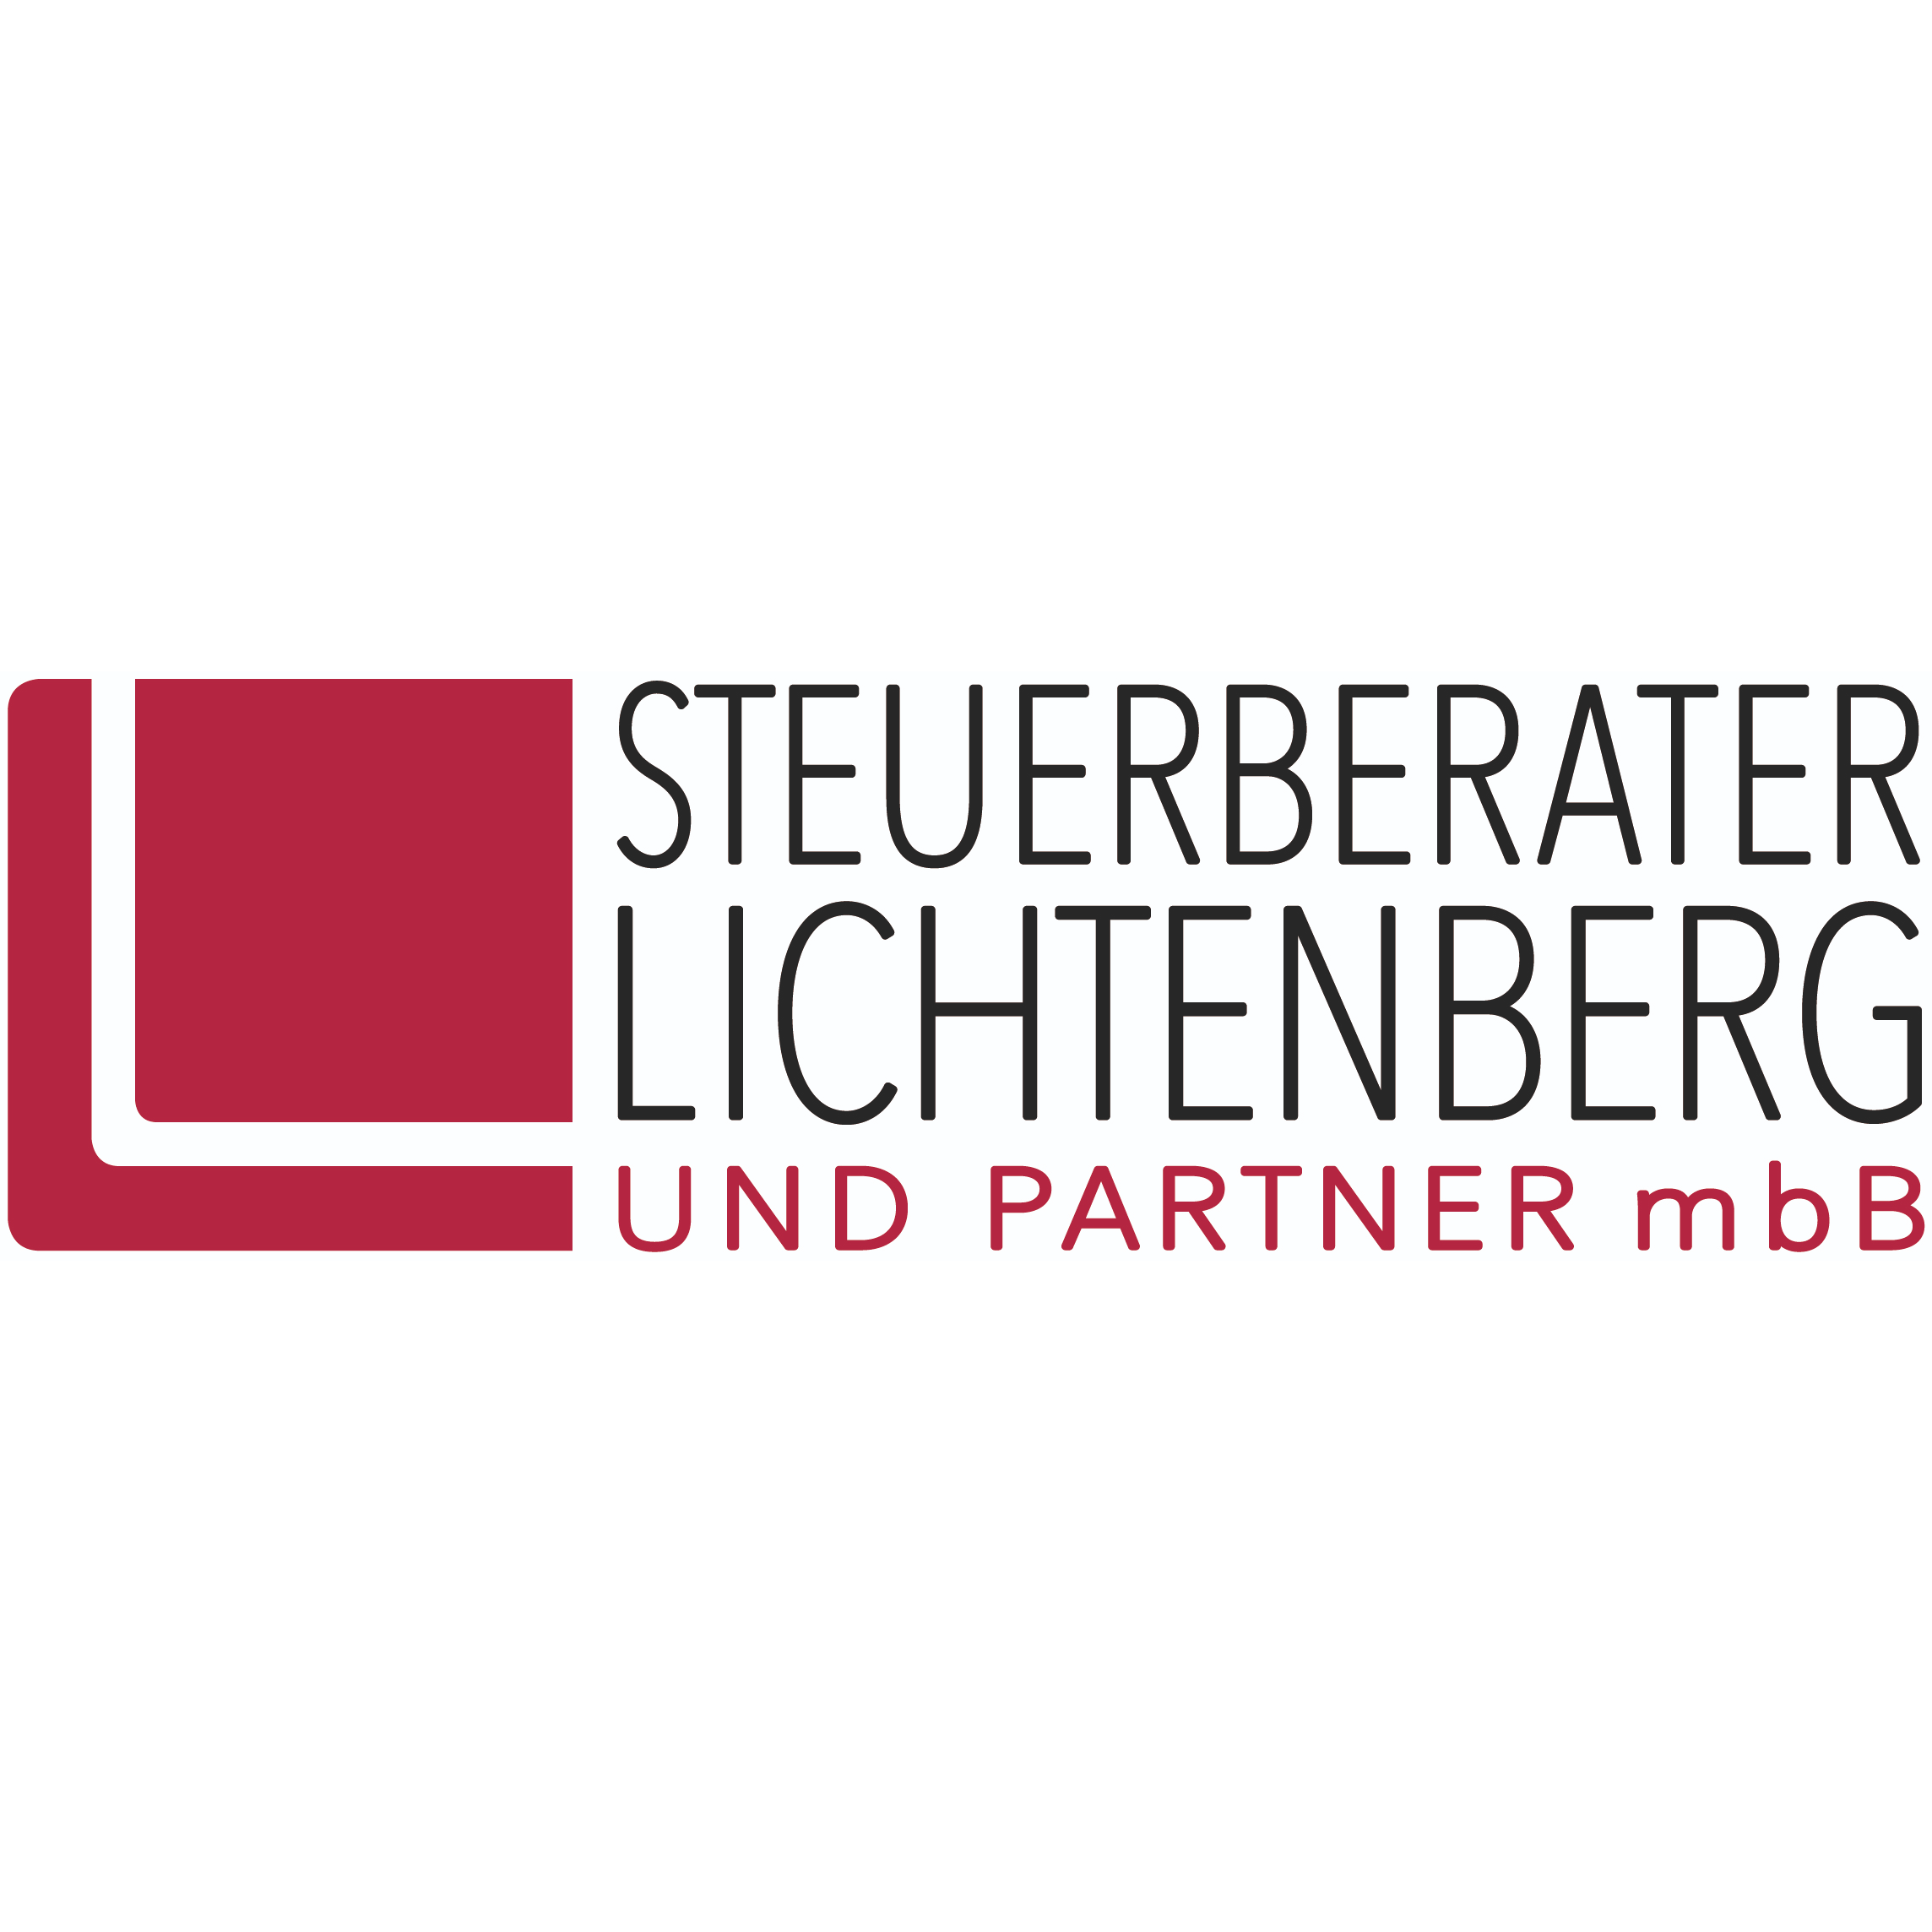 Steuerberater Lichtenberg und Partner mbB Logo